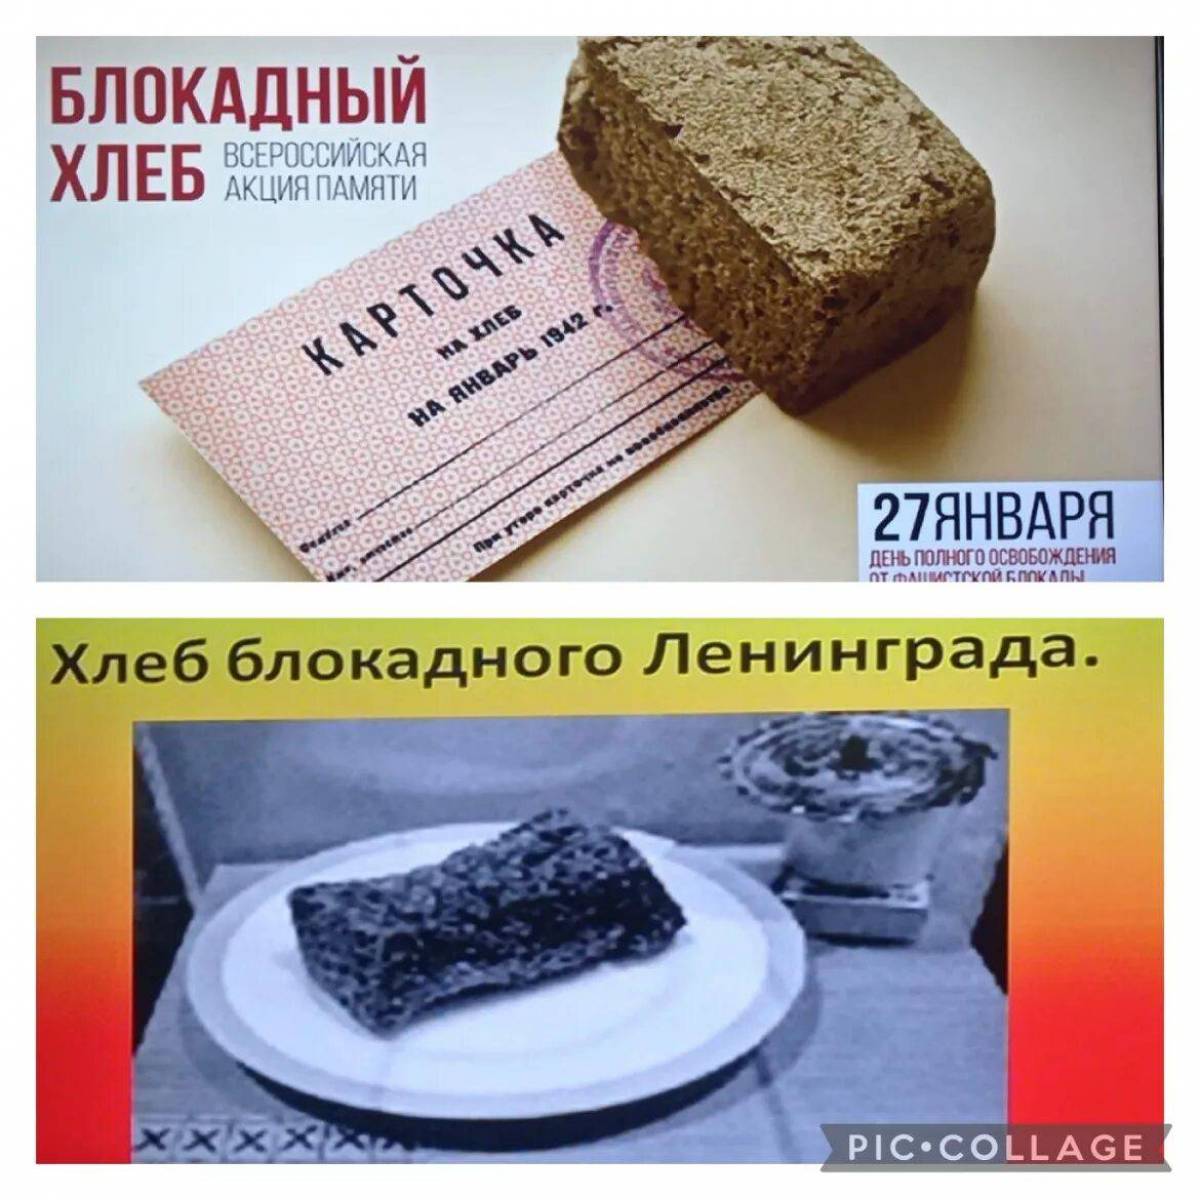 Блокадный хлеб ленинграда #27